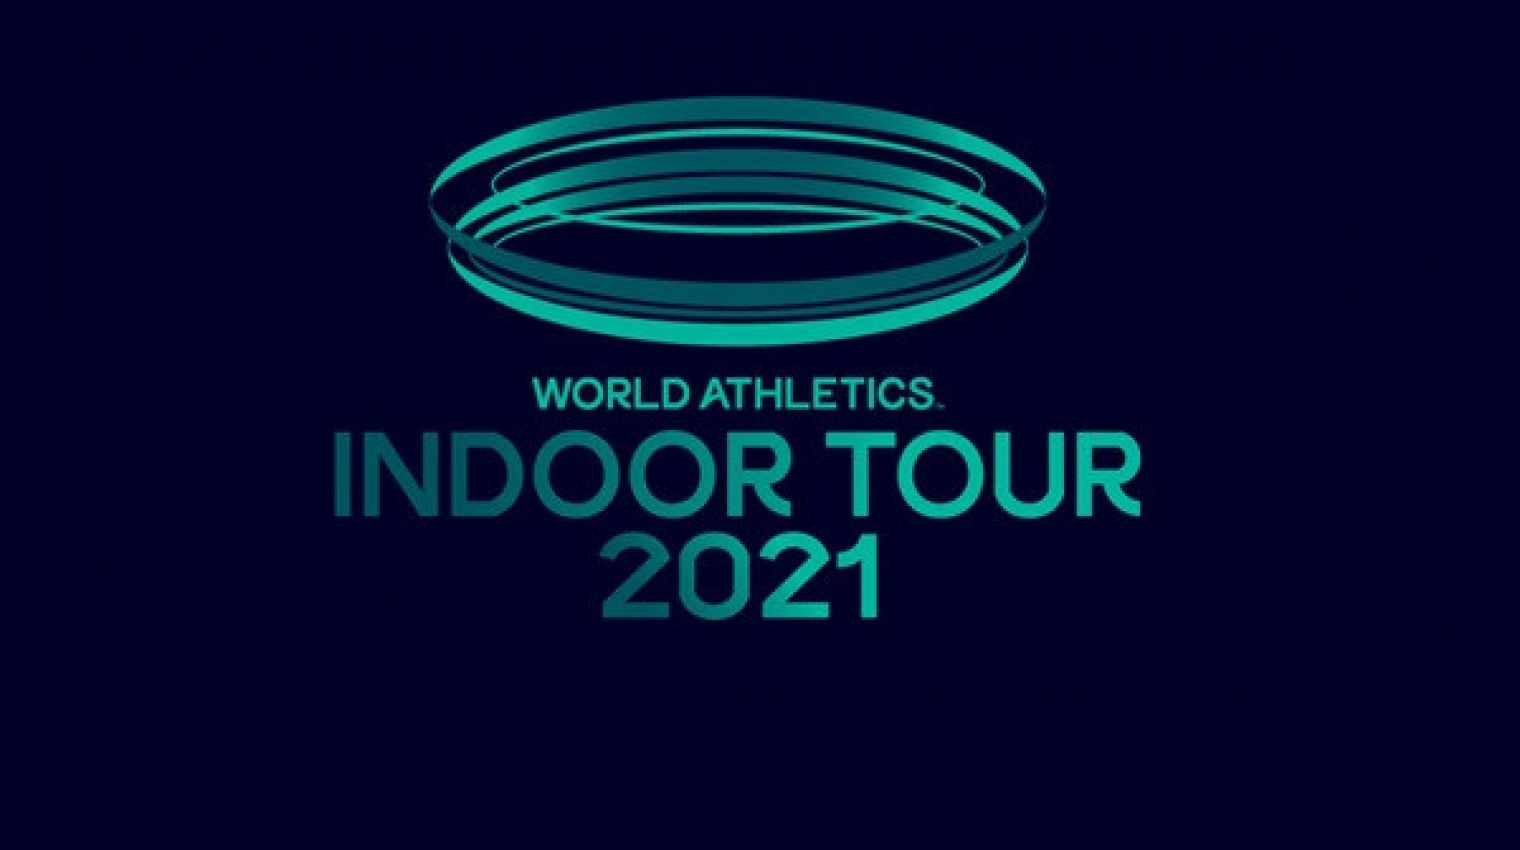 Обновлённый календарь мирового тура в закрытых помещениях представила World Athletics